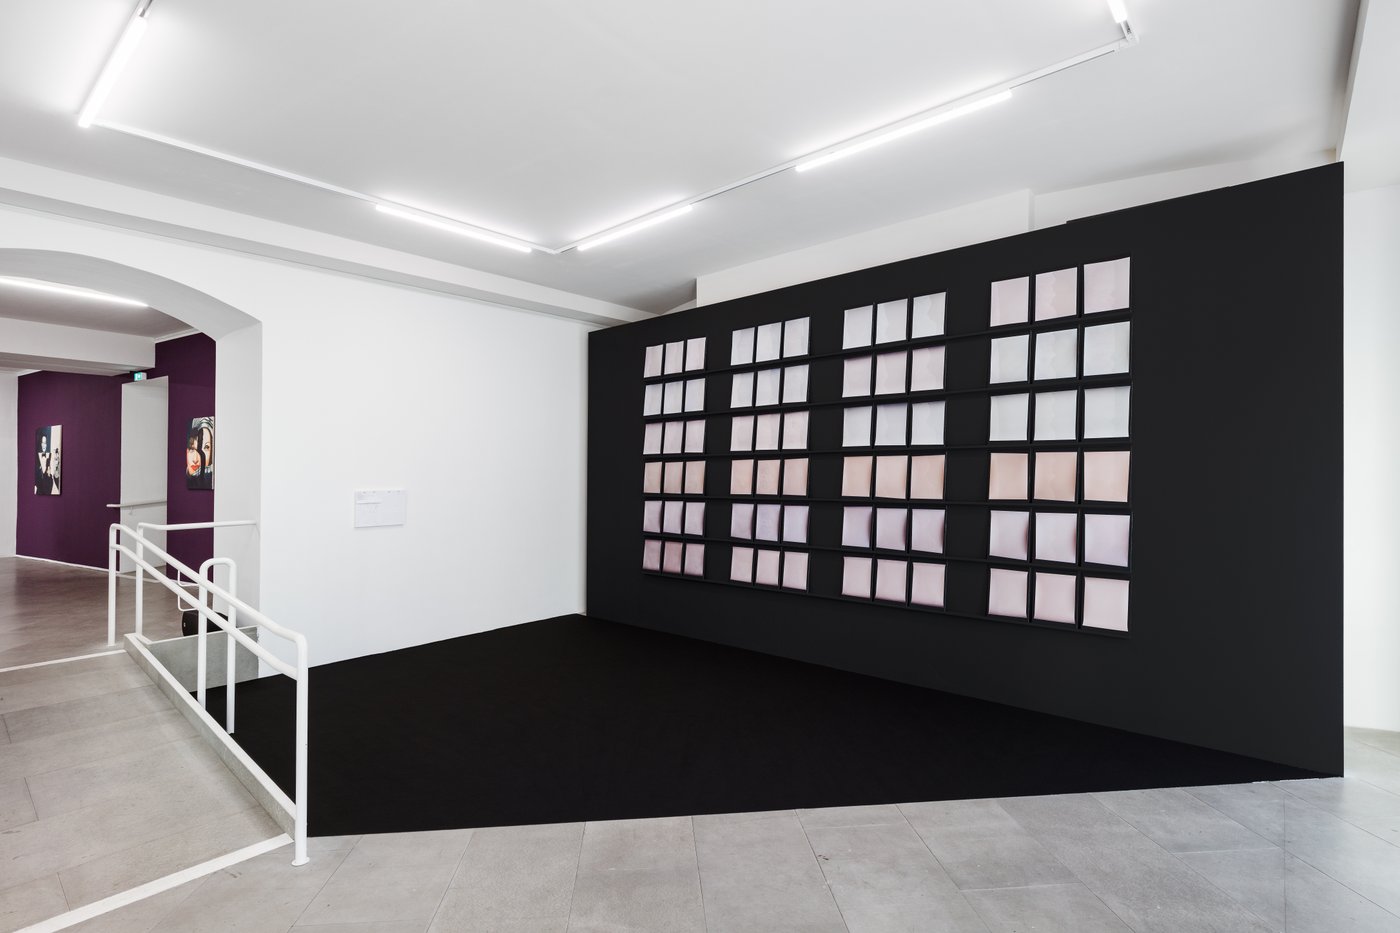 Auf einer Art schwarzen Bühne sieht man 4 Blöcke von jeweils 3 x 6 Reihen von Montioren, die wie rosa Kissen wirken. Im Hintergrund Bilder auf einer lila Wand.